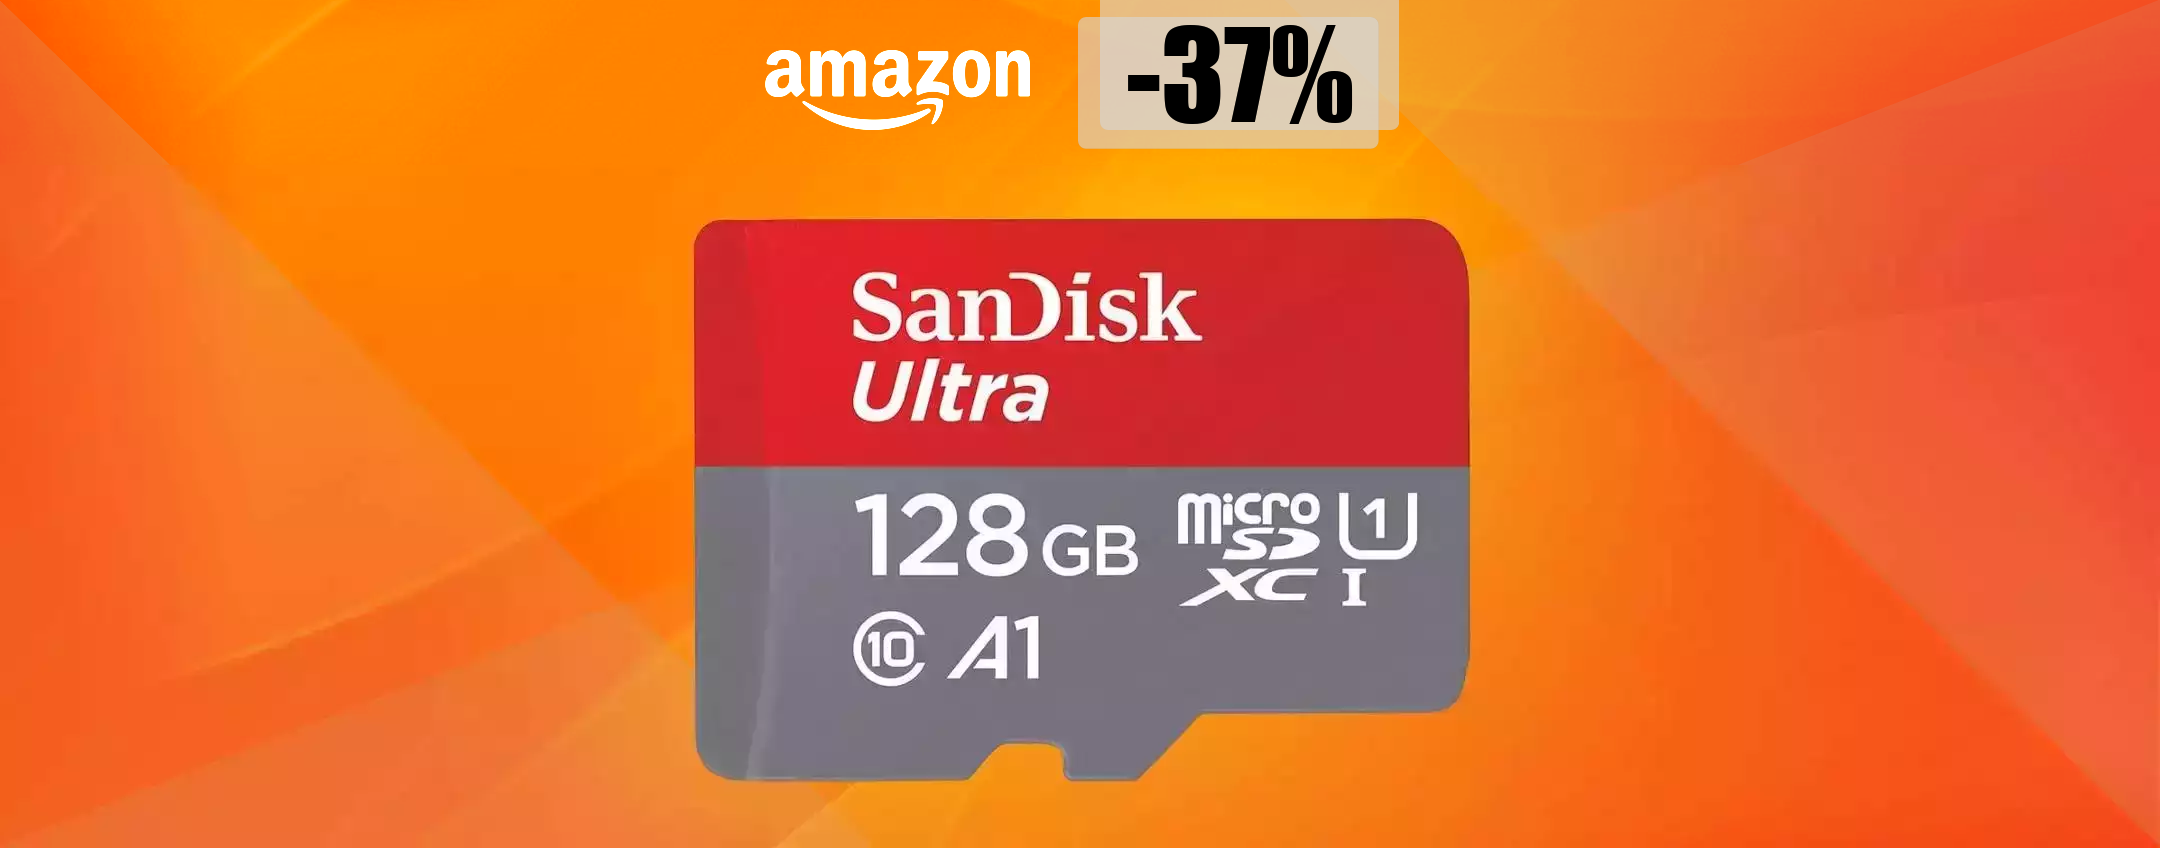 MicroSD 128GB, il prezzo precipita su Amazon: FOLLIA ad appena 19€